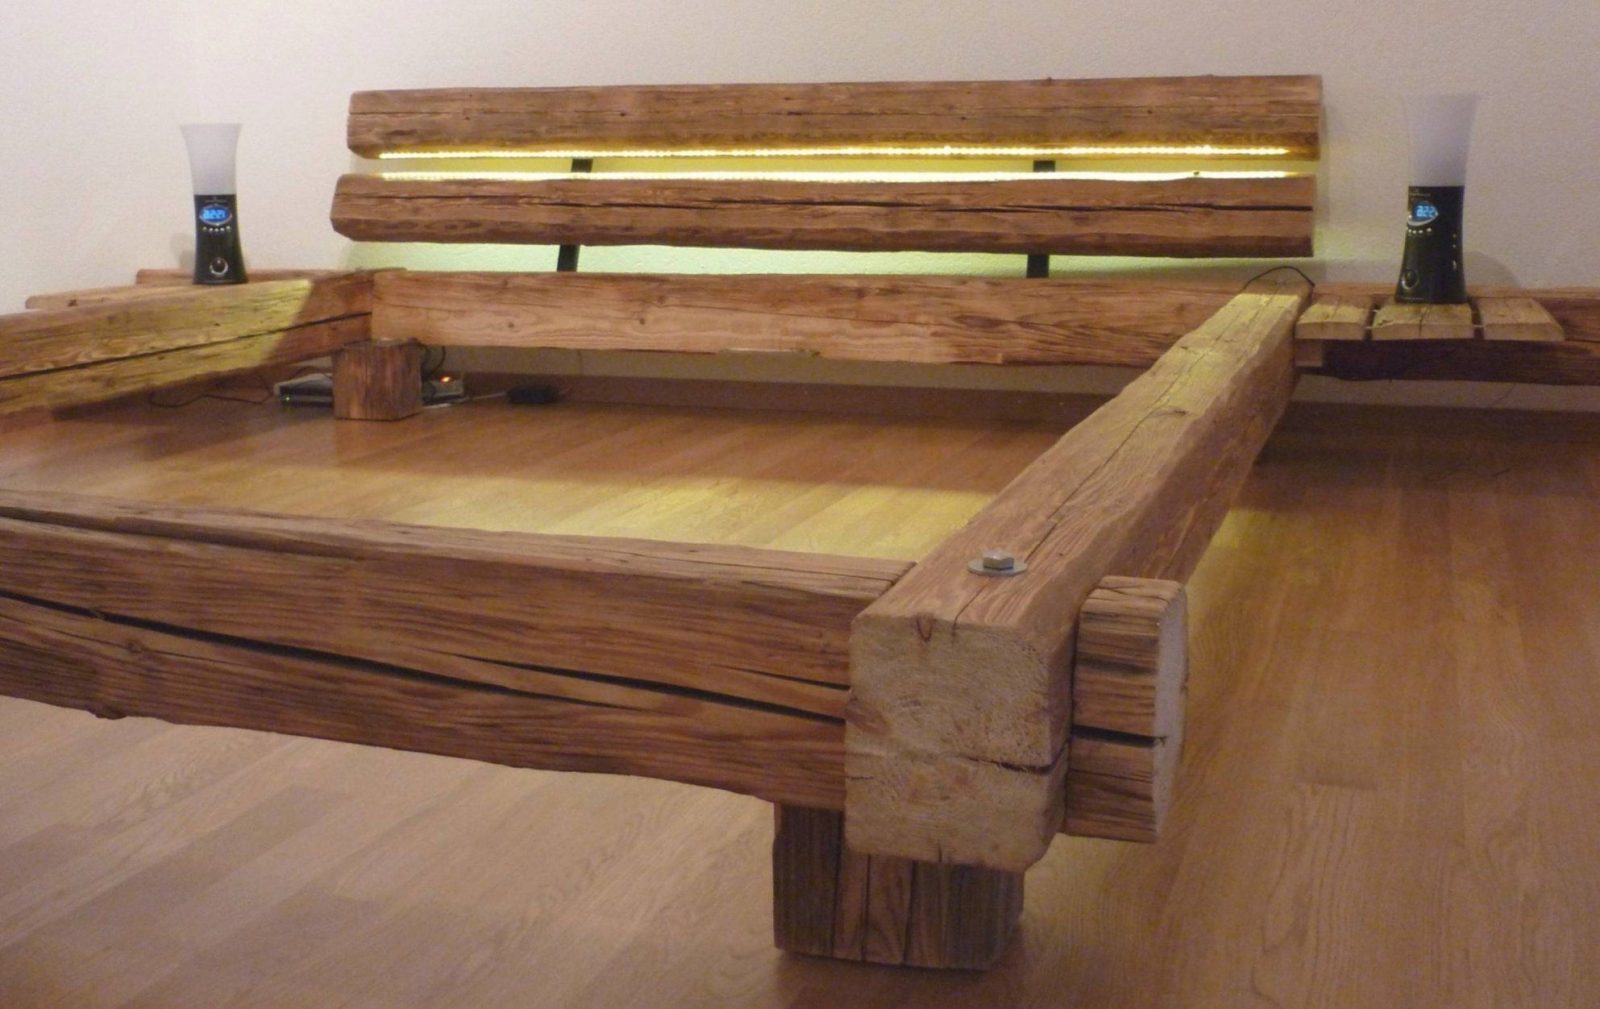 Holz Bett Selber Bauen Mit Neueste Holzbett Selber Bauen Labandcraft von Bett Aus Balken Bauen Bild